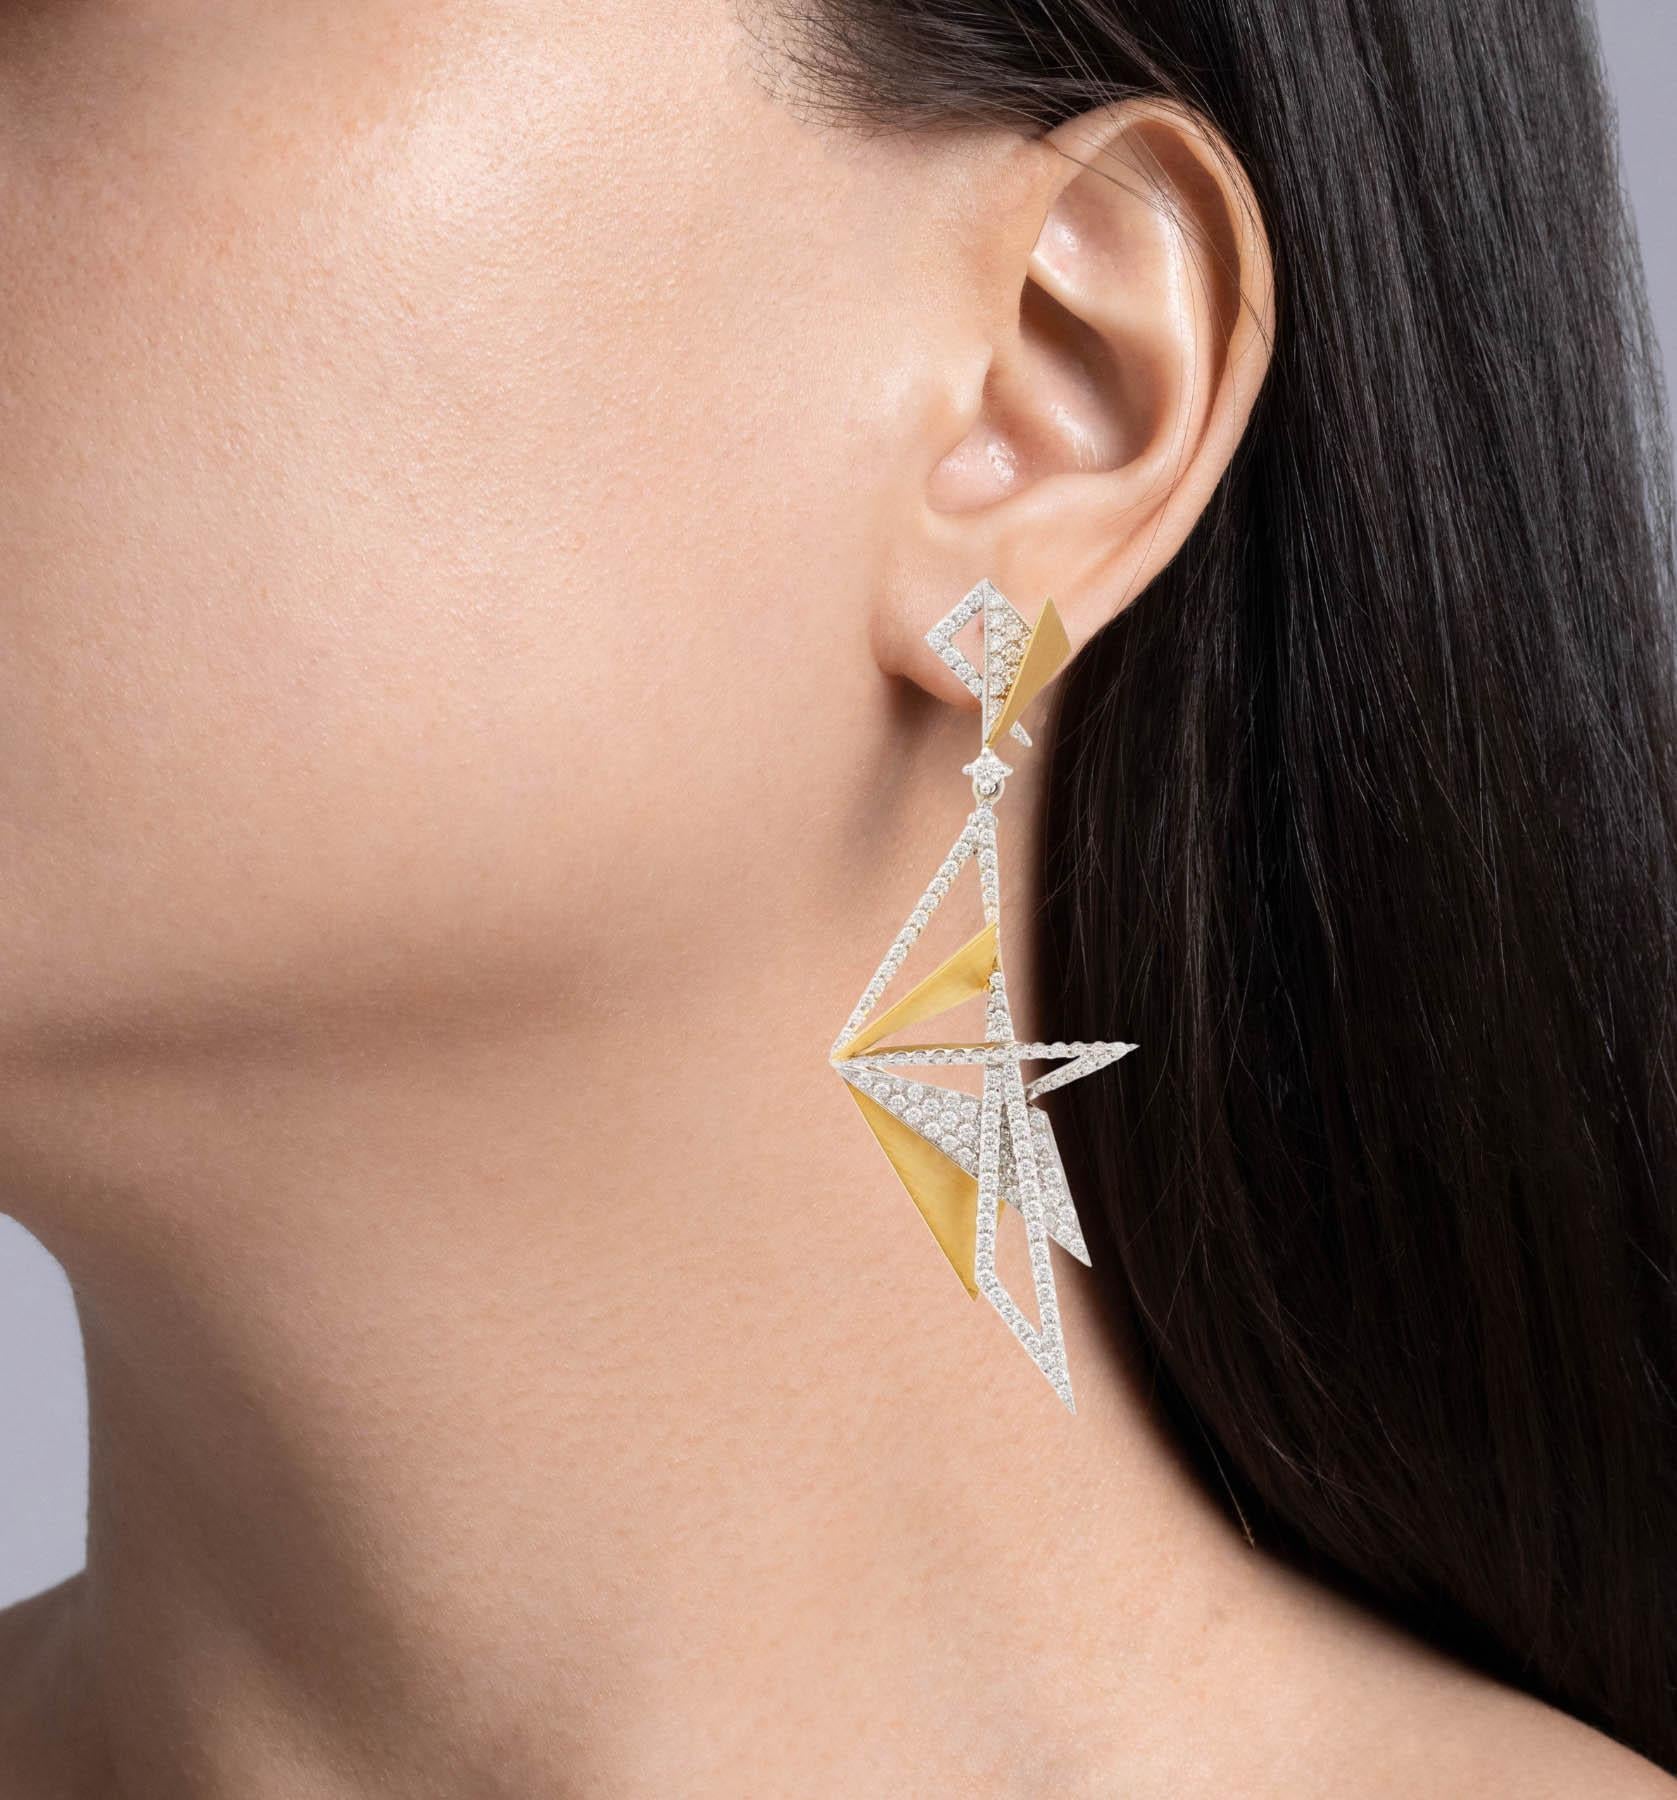 Kavant & Sharart Boucles d'oreilles Origami Aura en or jaune 18 carats et diamants
Sertie de diamants ronds brillants ; poids total estimé à 3,47ctw.
Chaque boucle d'oreille mesure près de 69 mm de long. Le poids total des boucles d'oreilles est de